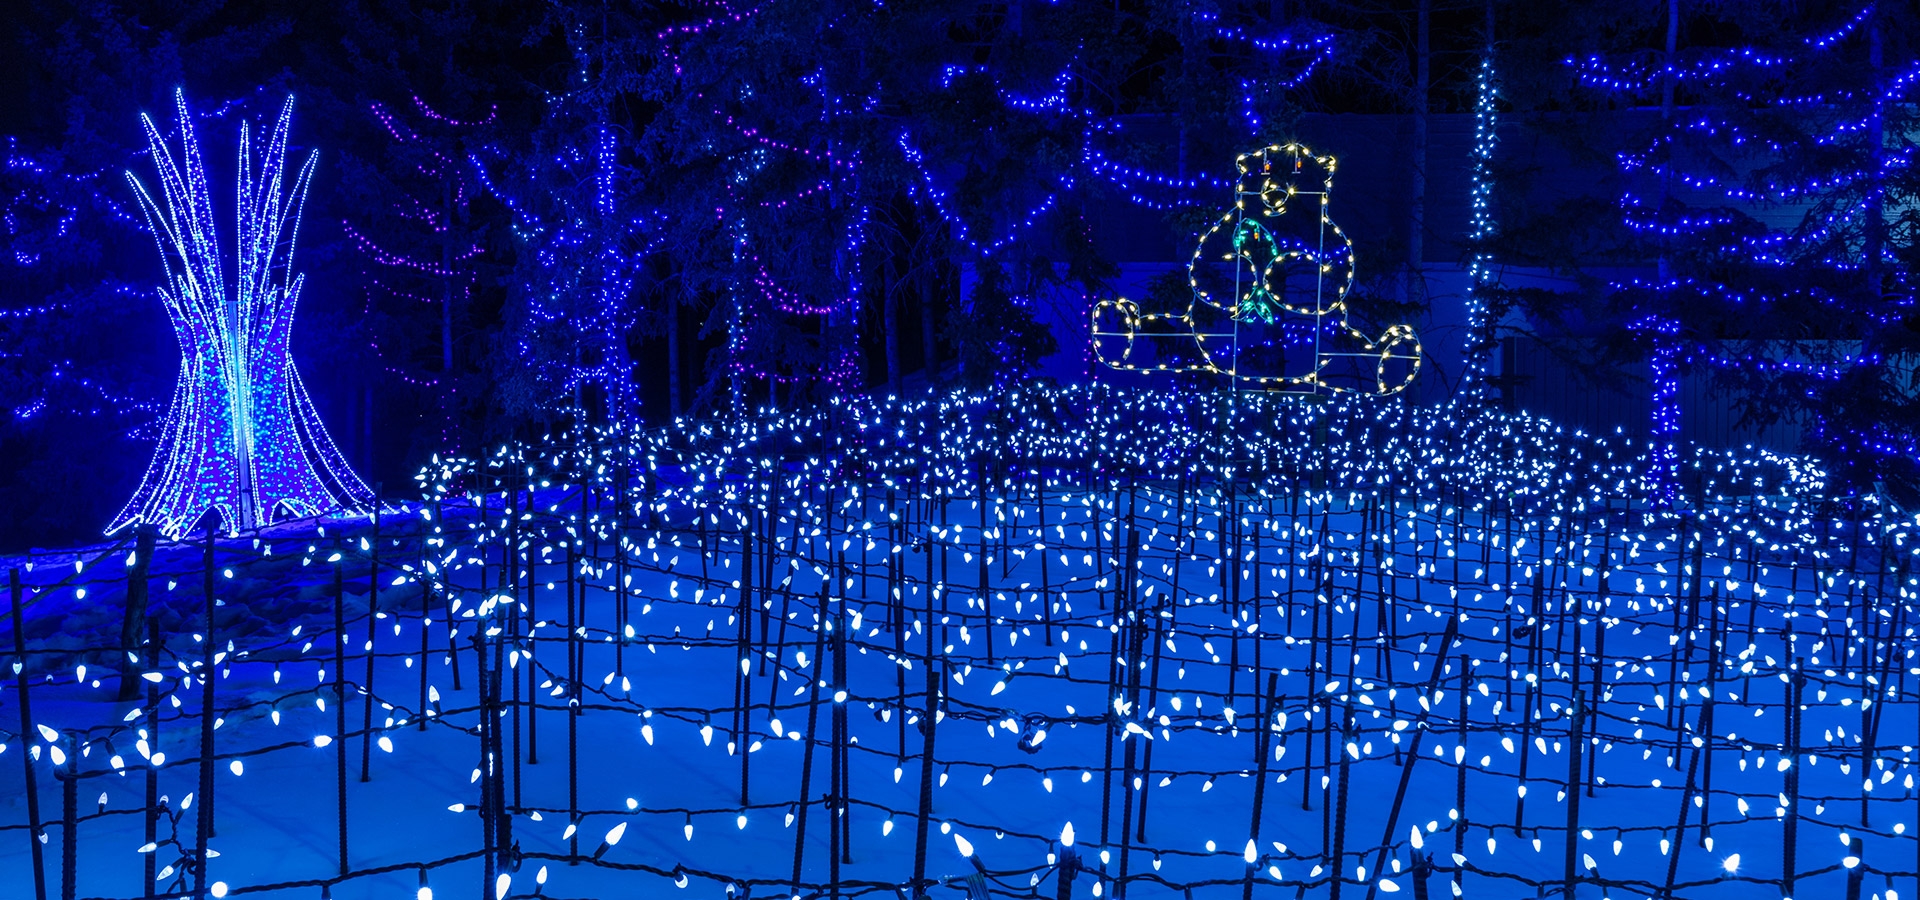 Prachtige sfeer verlichting in Calgary Zoo tijdens de kerst periode.